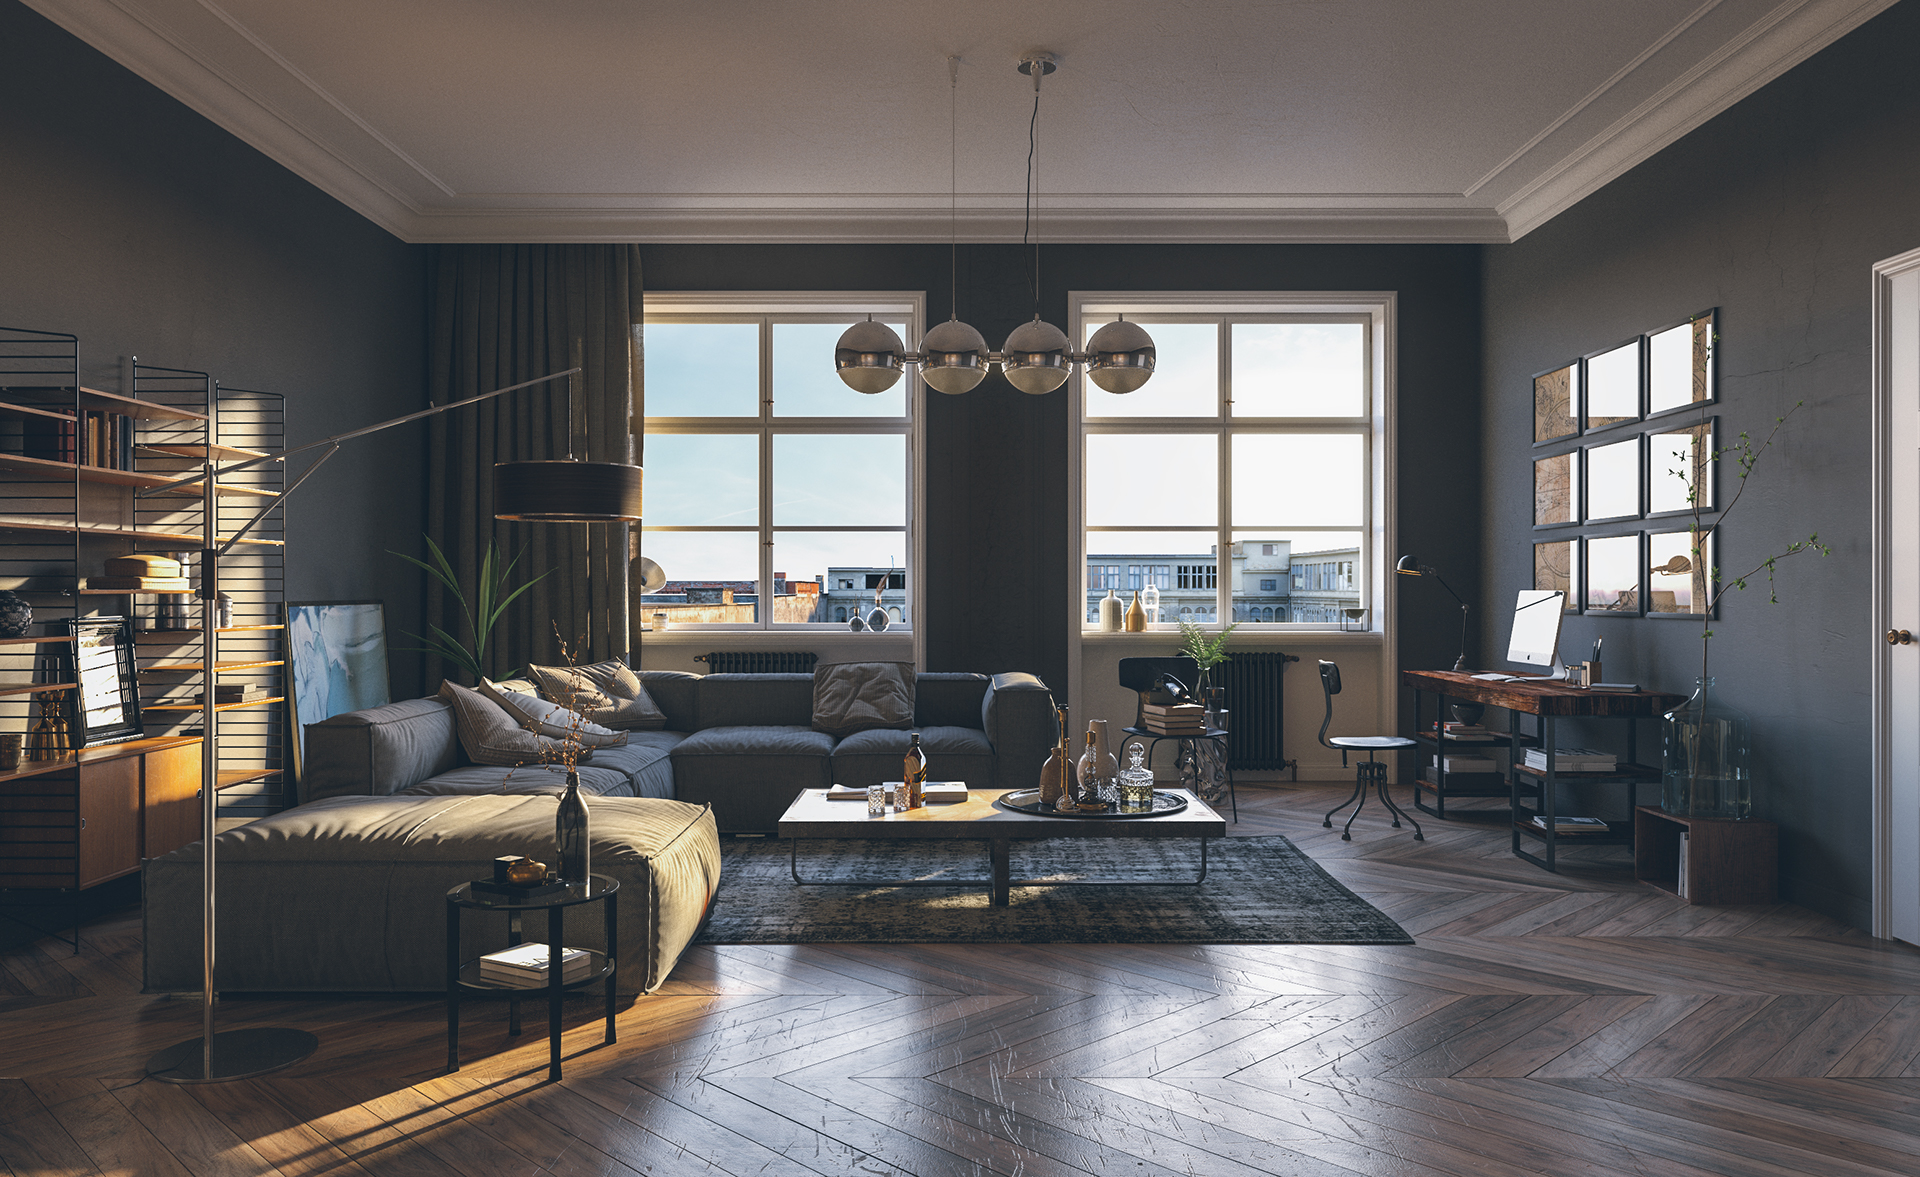 Modern White Living Room Interior Design: Timeless Elegance